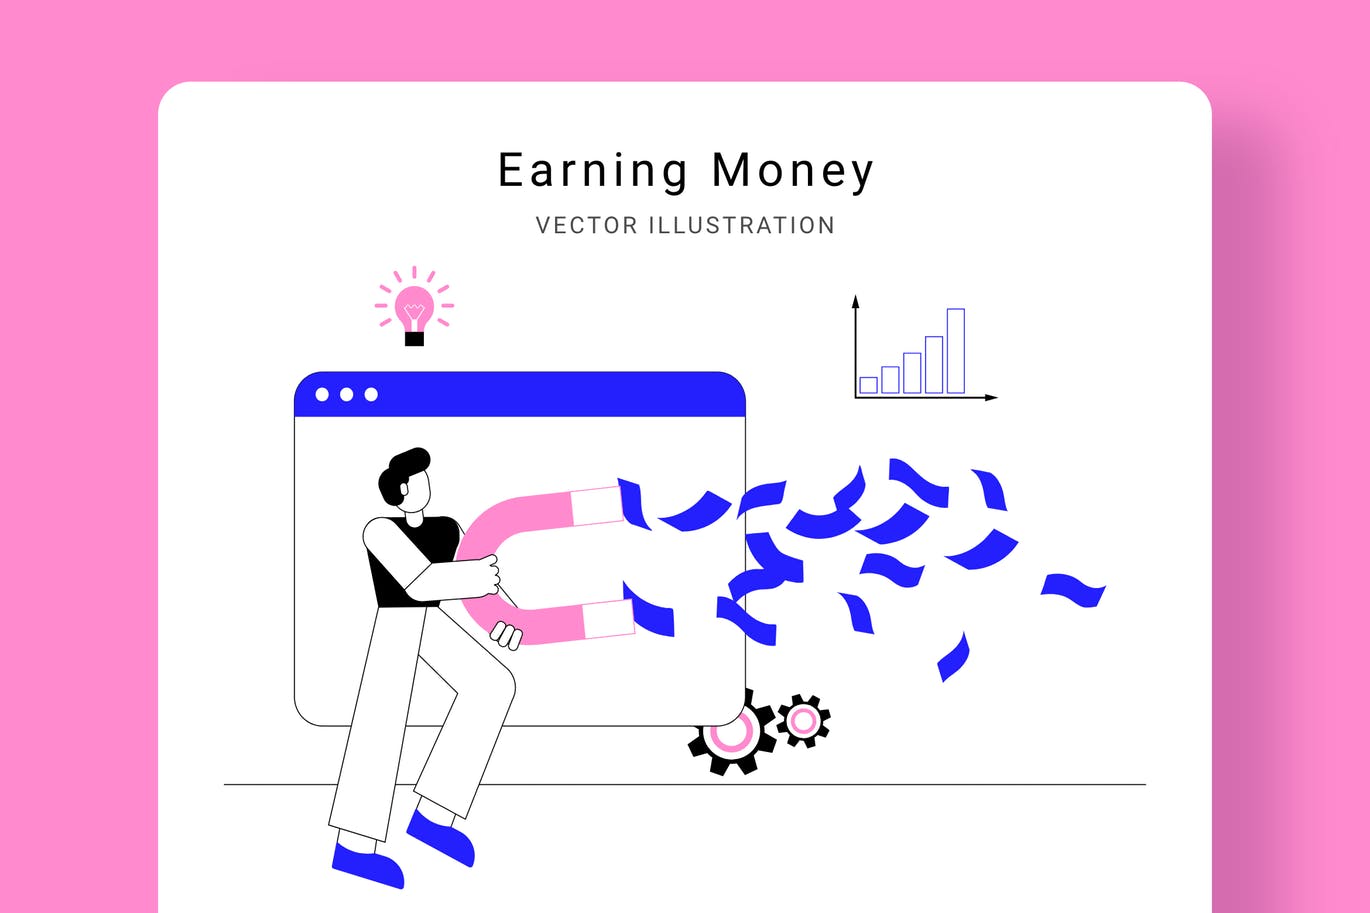 吸金磁石矢量16设计网精选概念插画设计素材 Earning Money Vector Illustration Scene插图